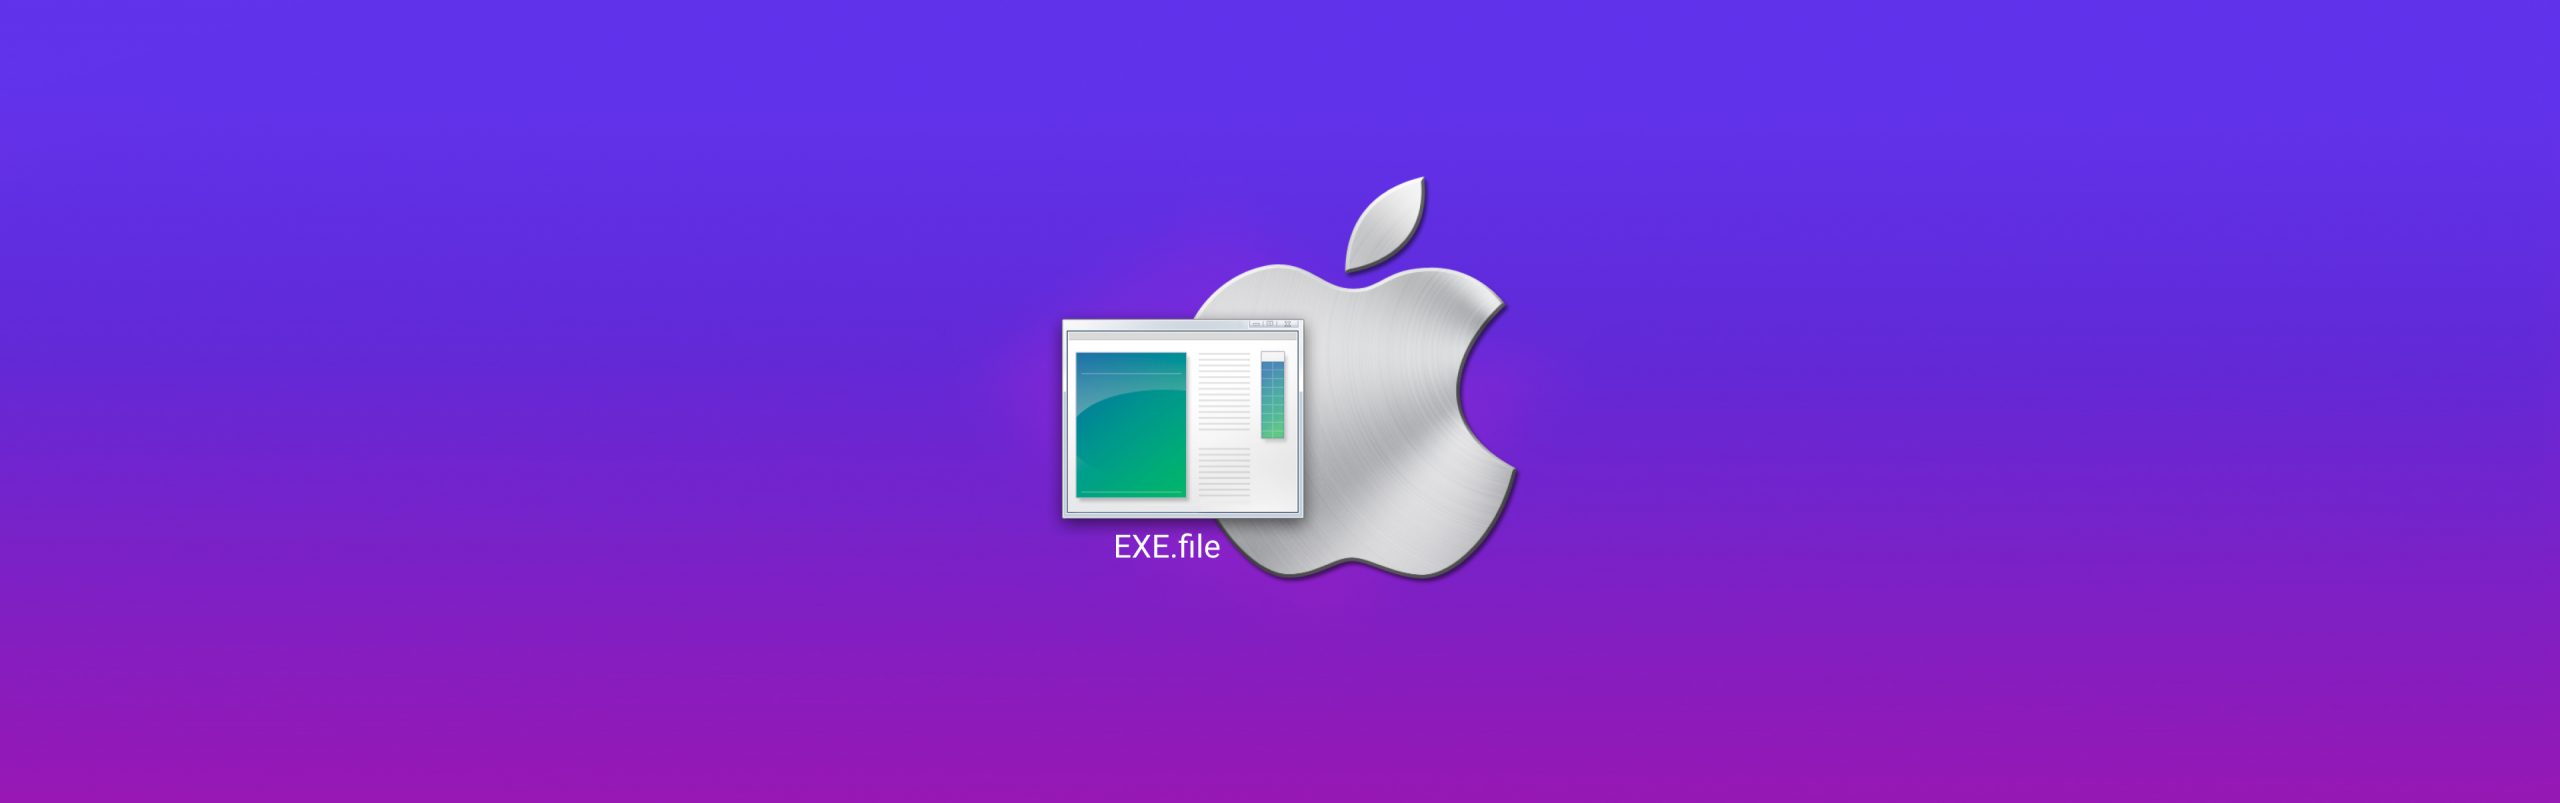 mac .exe file opener